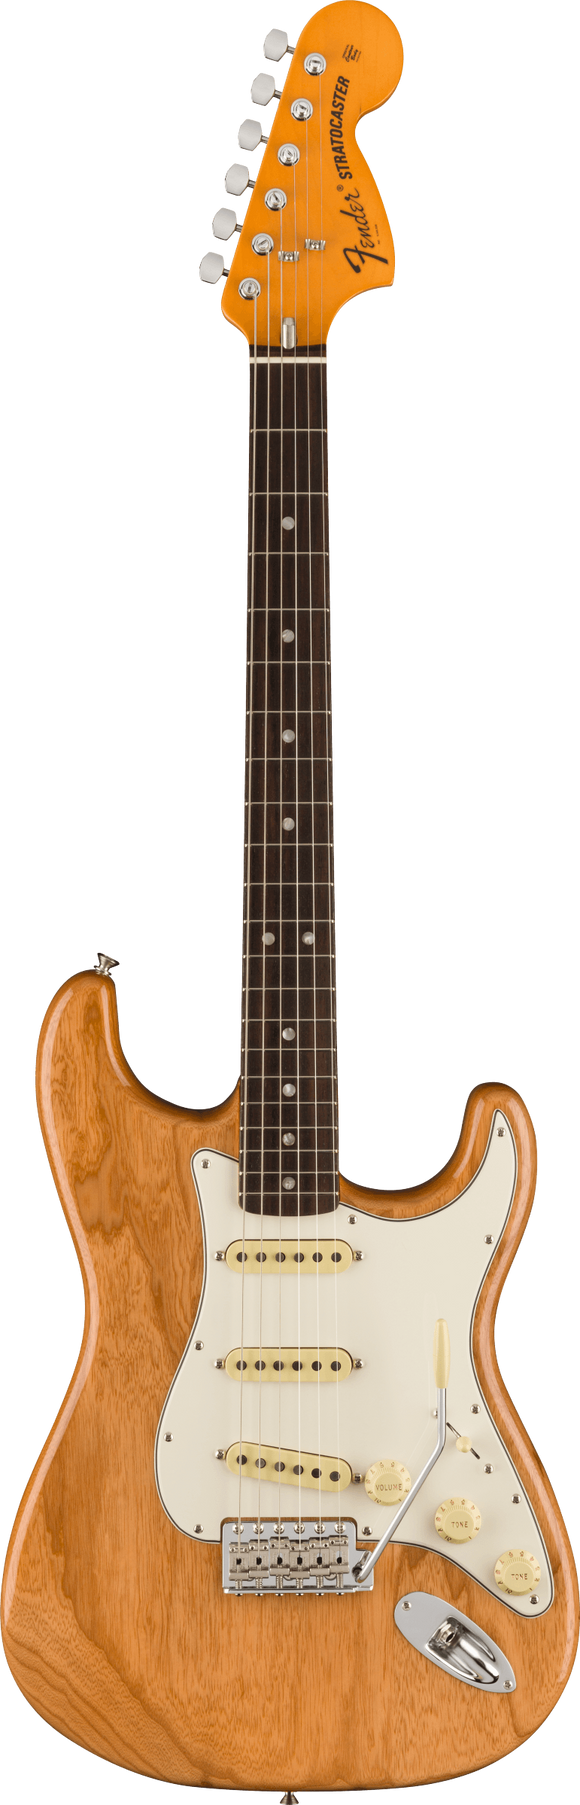 Fender American Vintage II 1973 Stratocaster, Fingerboard, Aged Natural